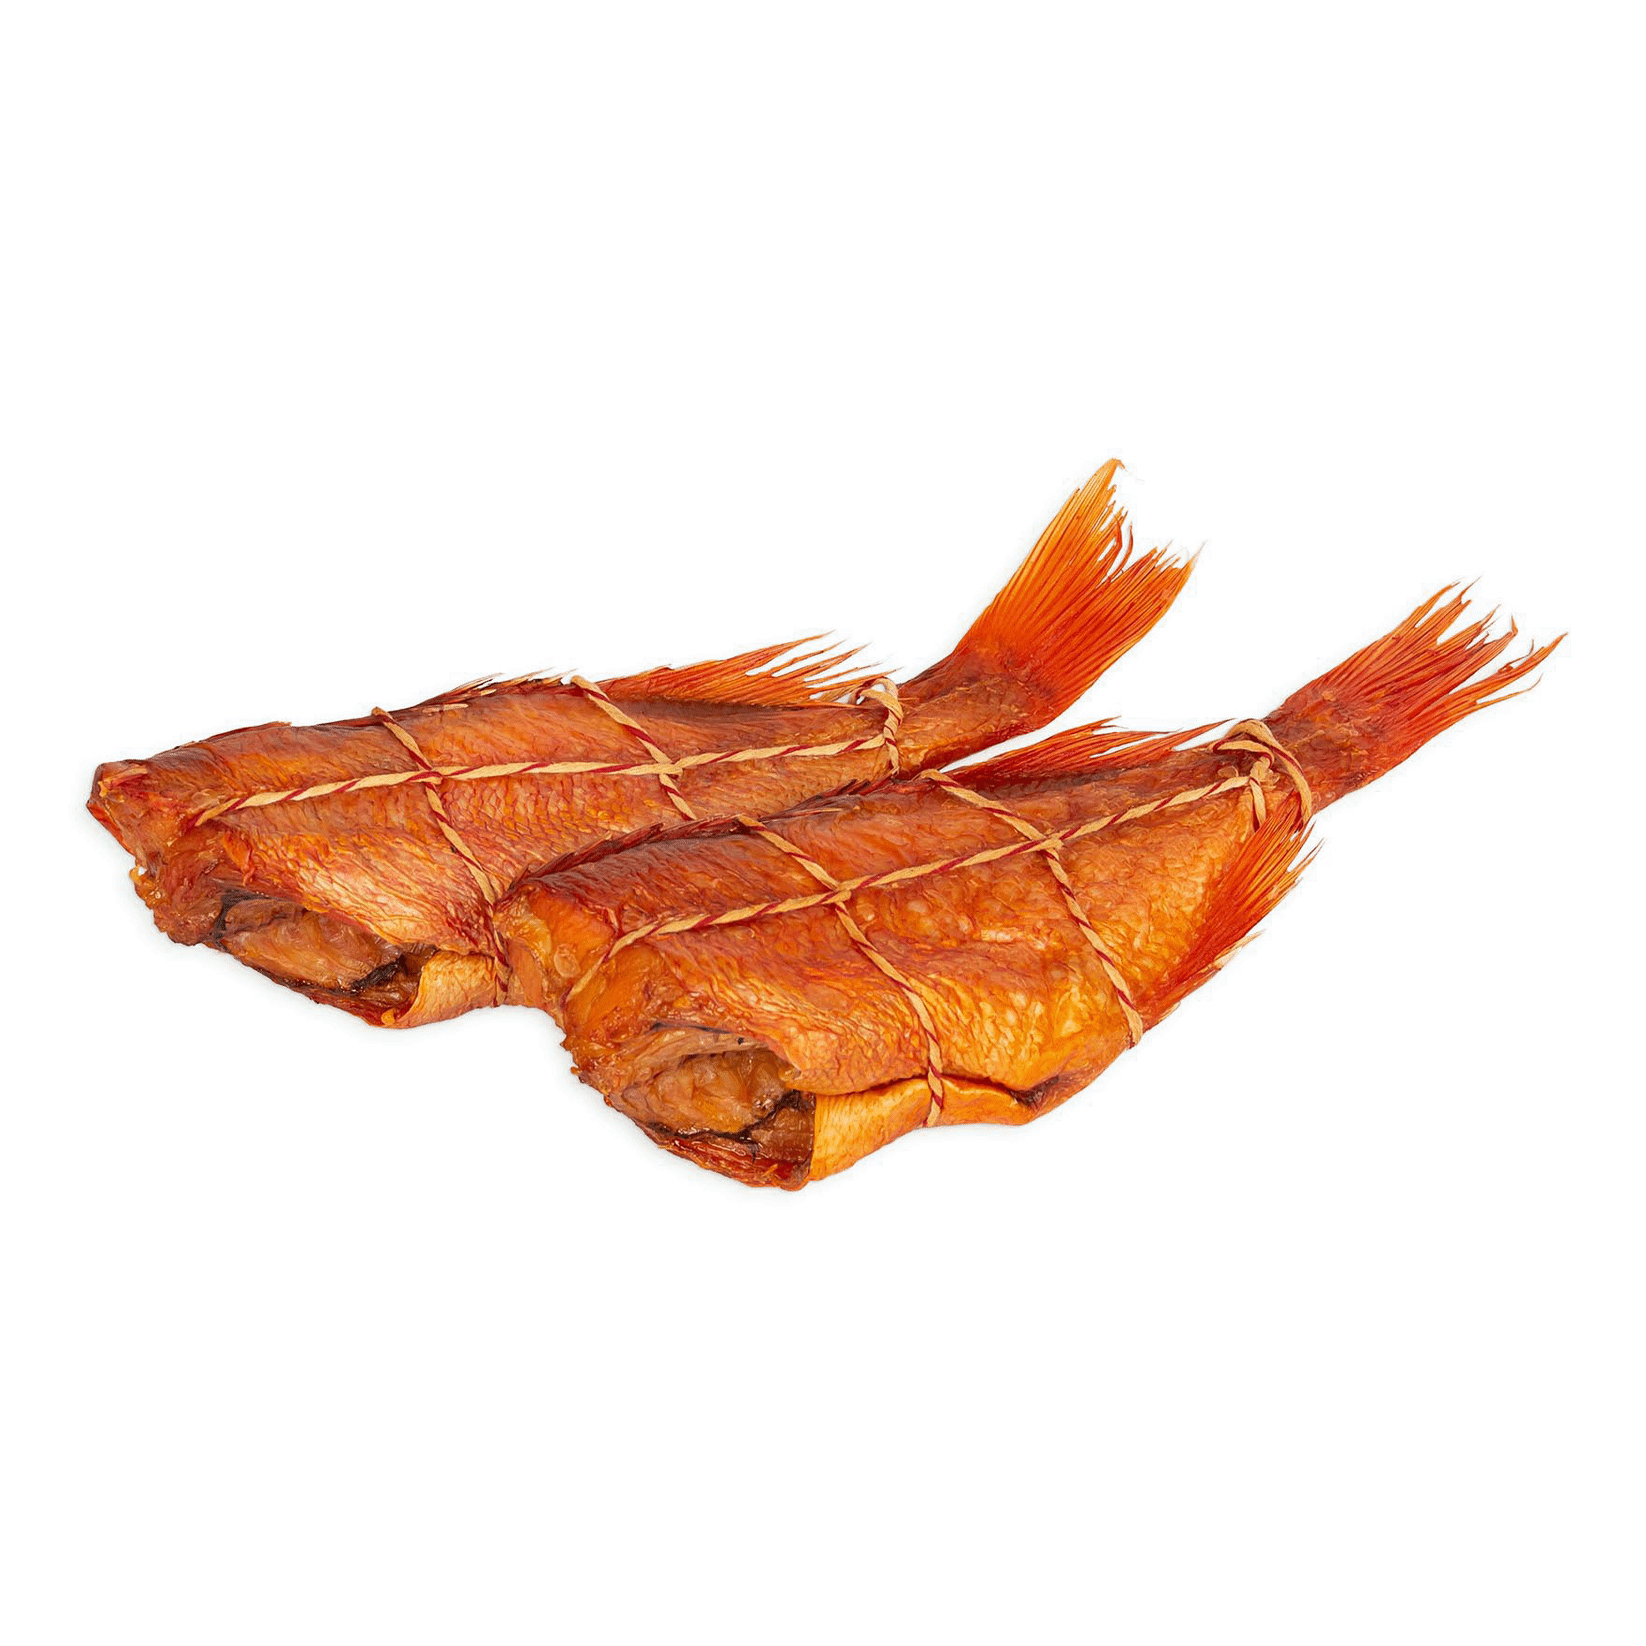 Окунь Extra Fish горячего копчения потрошеный без головы кг